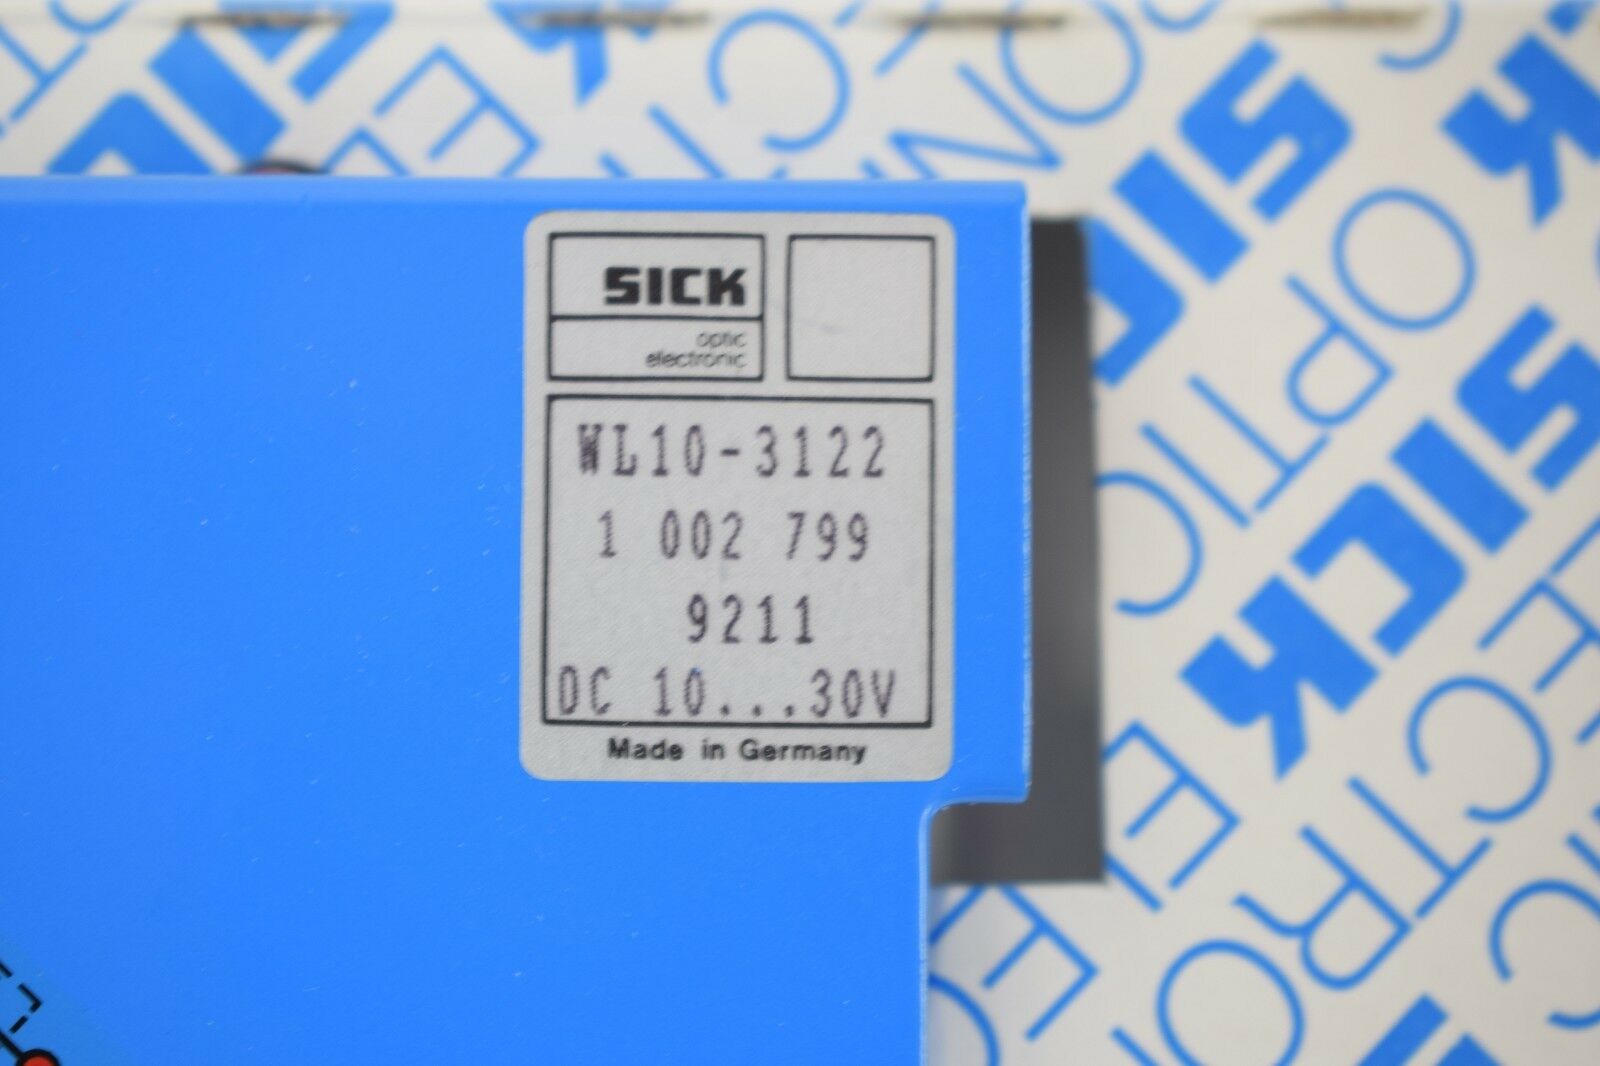 SICK Lichtschranke WL 10-3122 ( WL10-3122 )